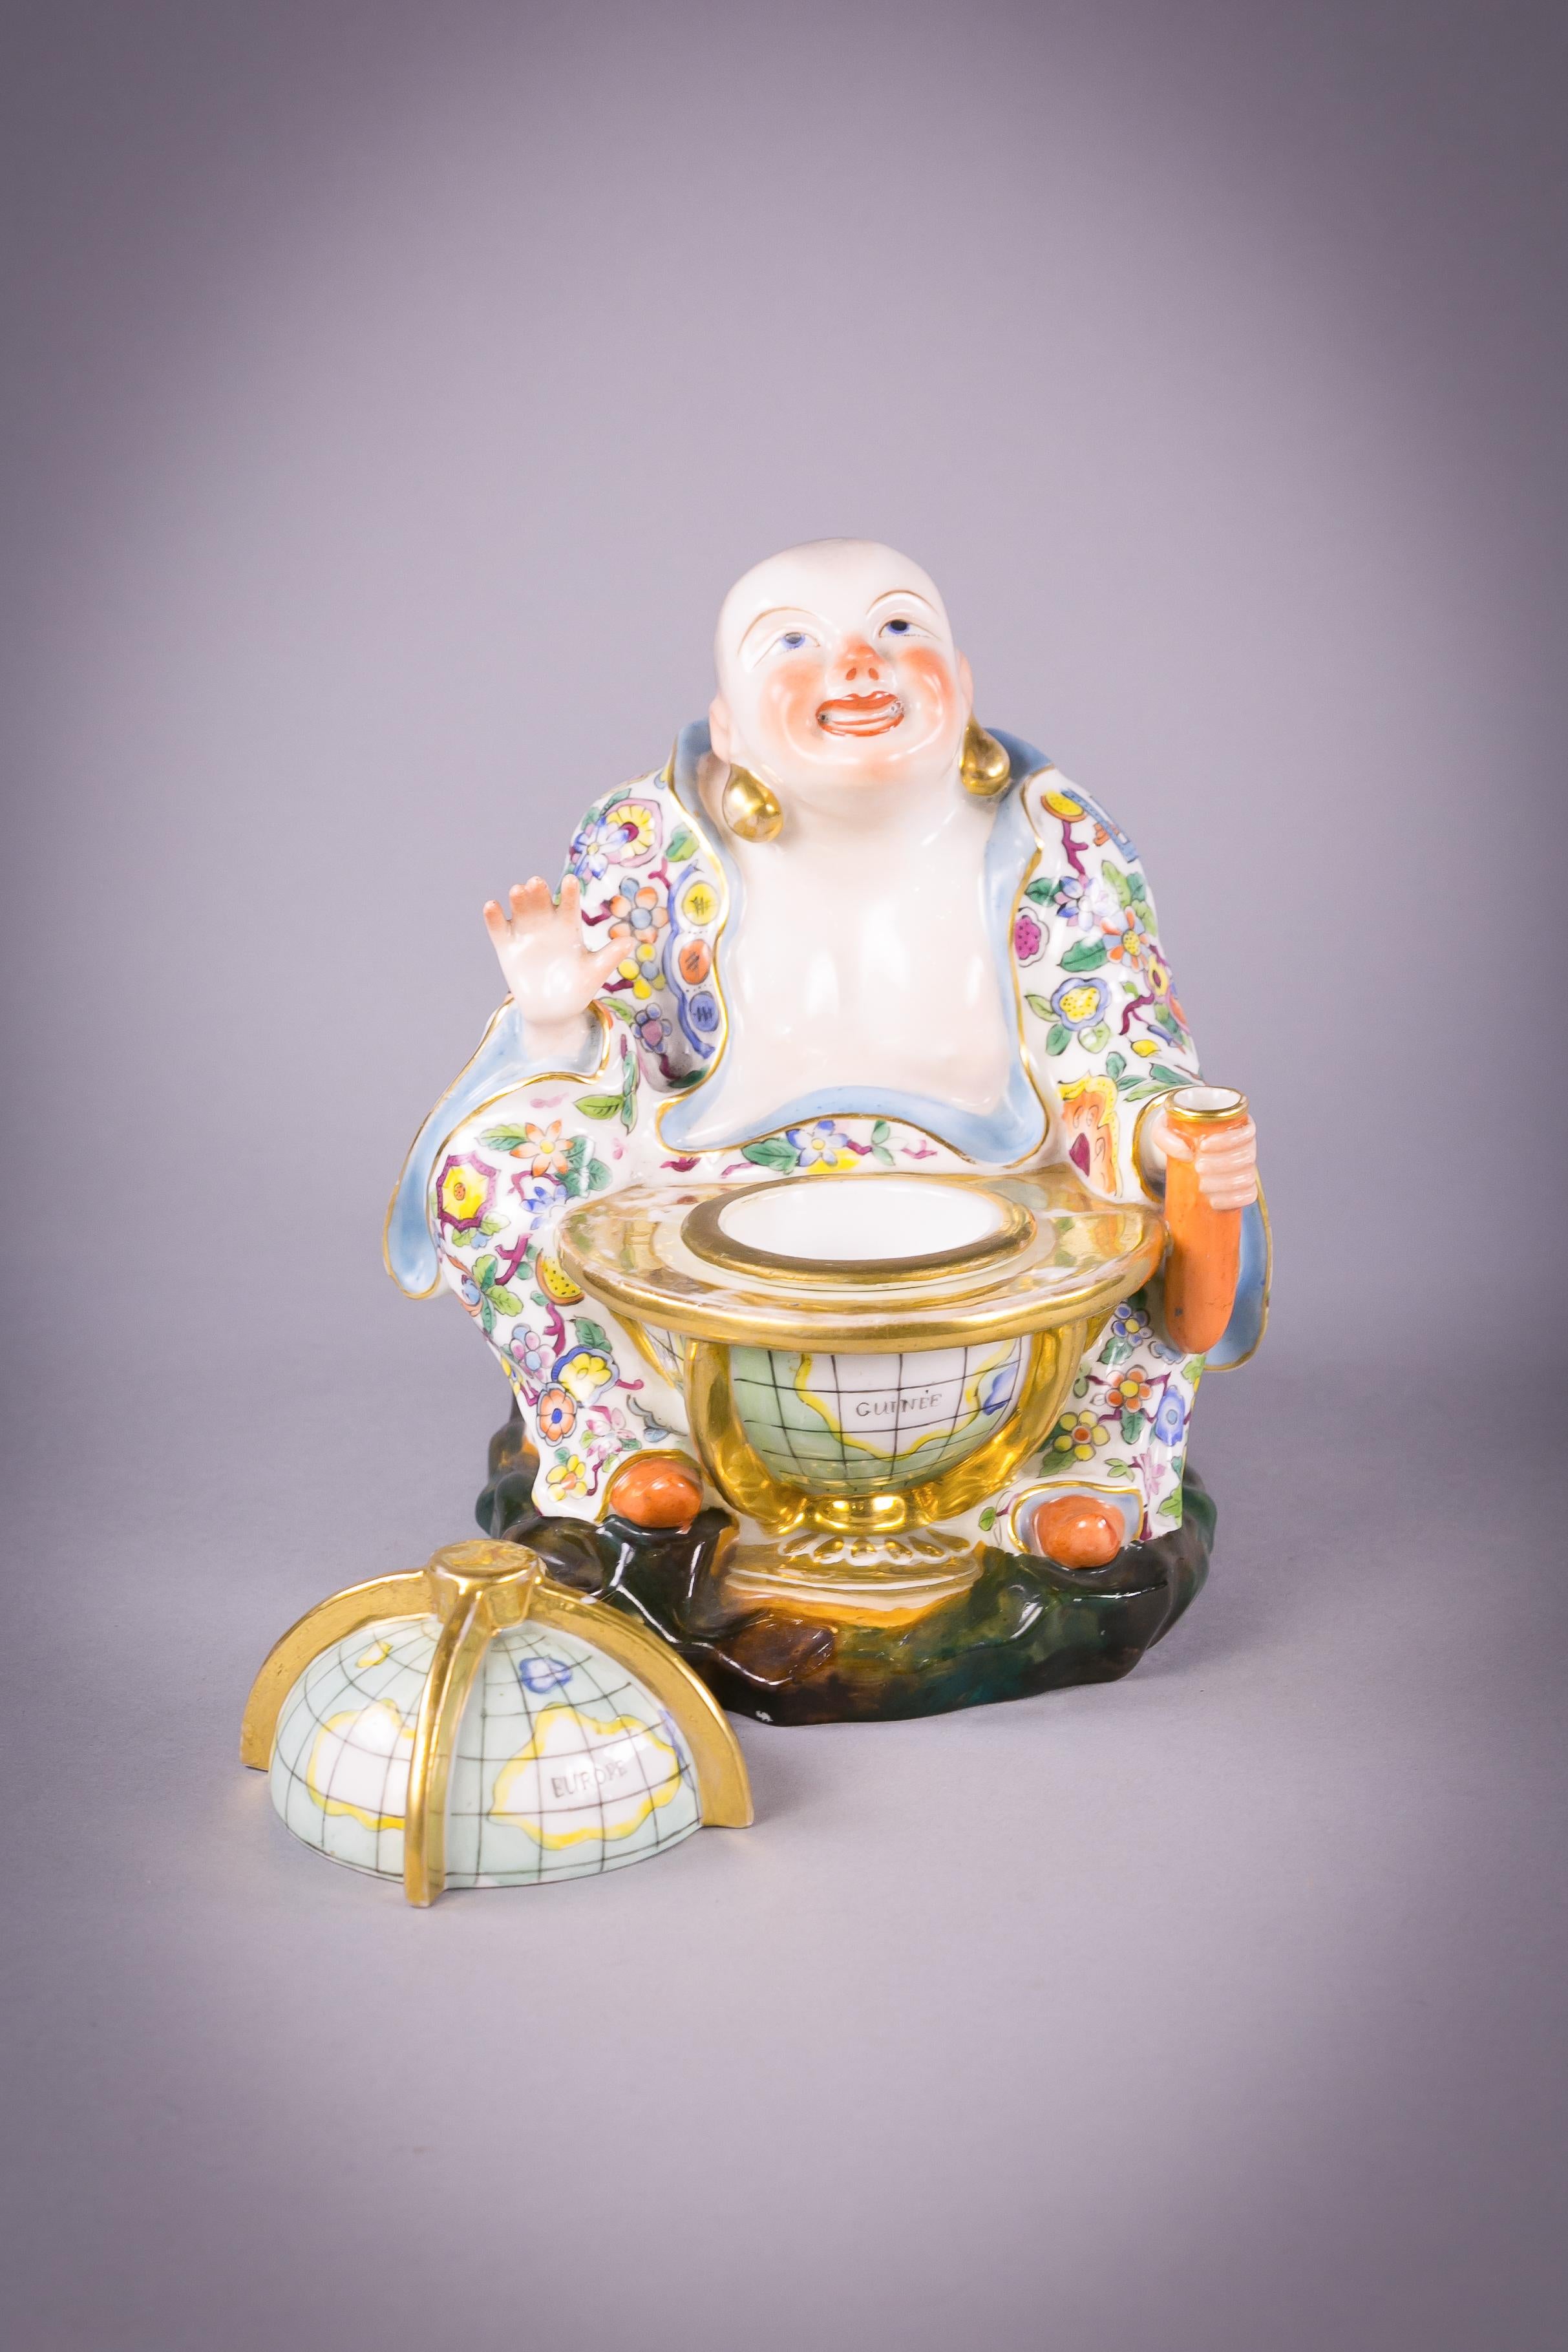 Avec globe amovible révélant un encrier amovible. Le Bouddha chinois tenant un porte-plume dans sa main gauche.